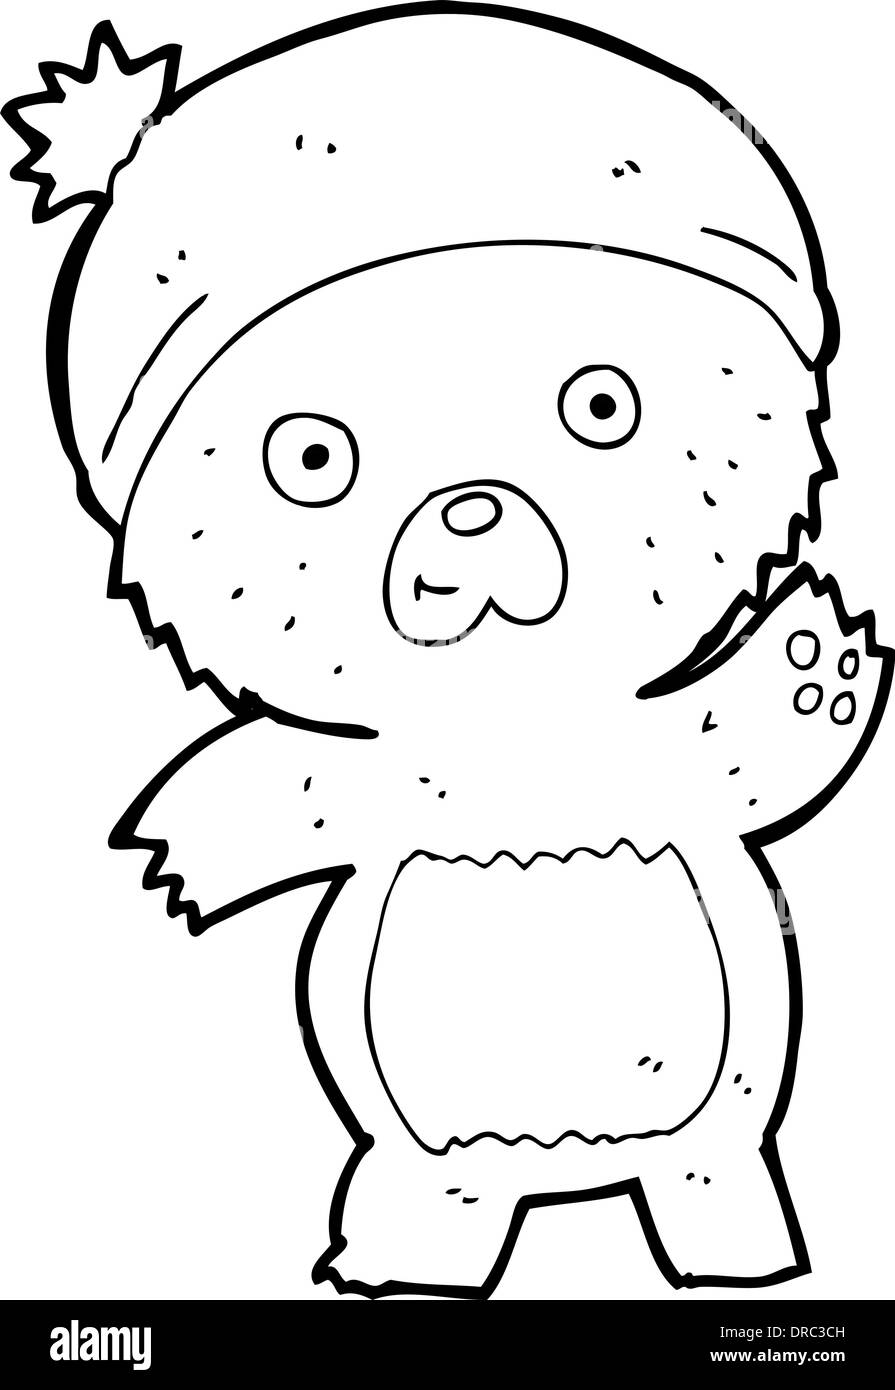 cute cartoon teddy bear Stock Vector Image & Art - Alamy